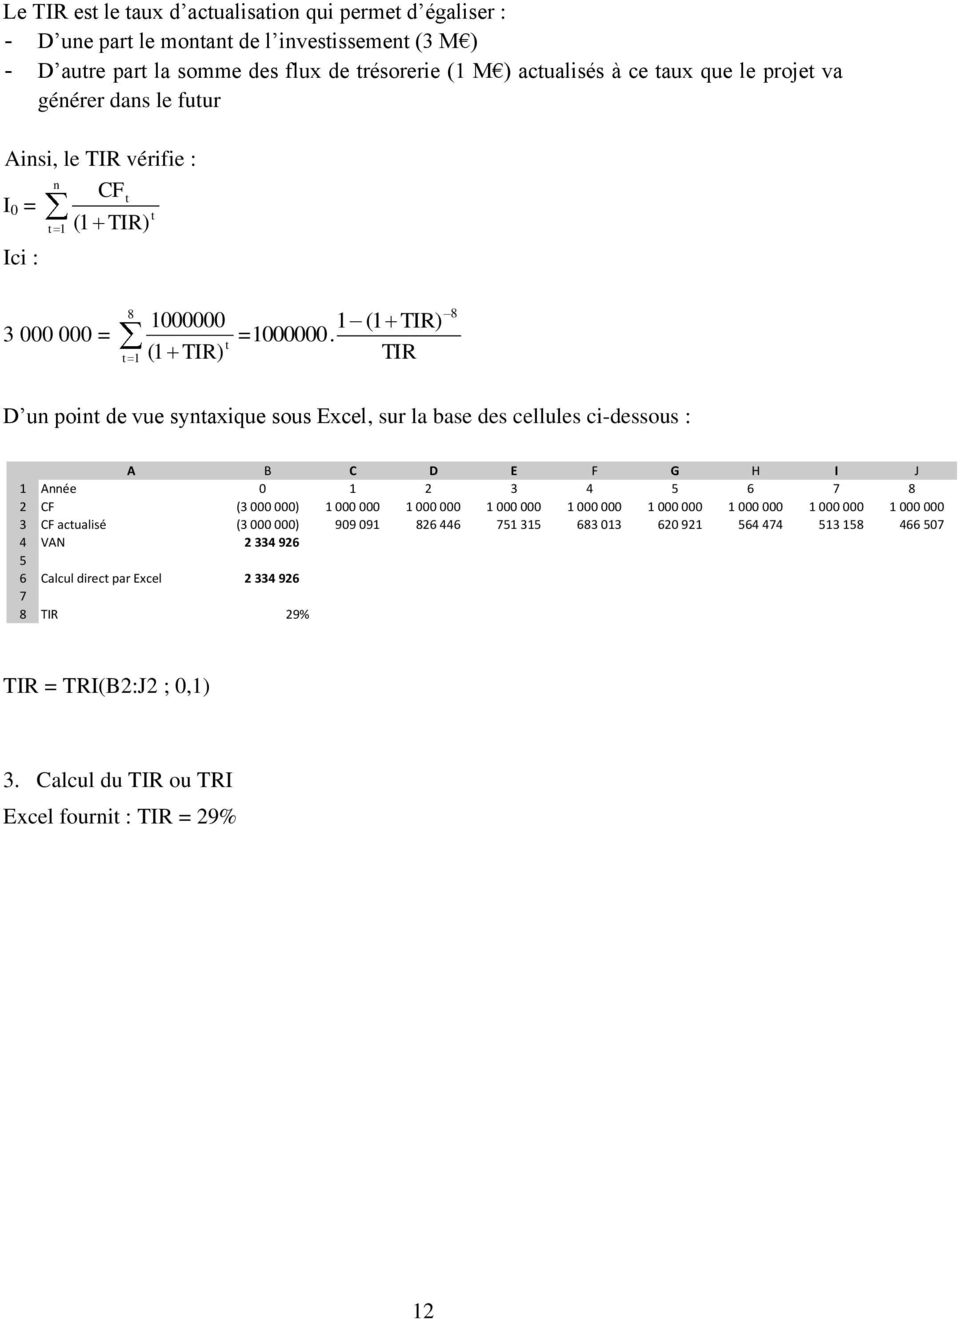 TIR ( ) TIR) 8 D u poi de vue syaxique sous Excel, sur la base des cellules ci-dessous : A B C D E F G H I J Aée 0 2 3 4 5 6 7 8 2 CF (3 000 000) 000 000 000 000 000 000 000 000